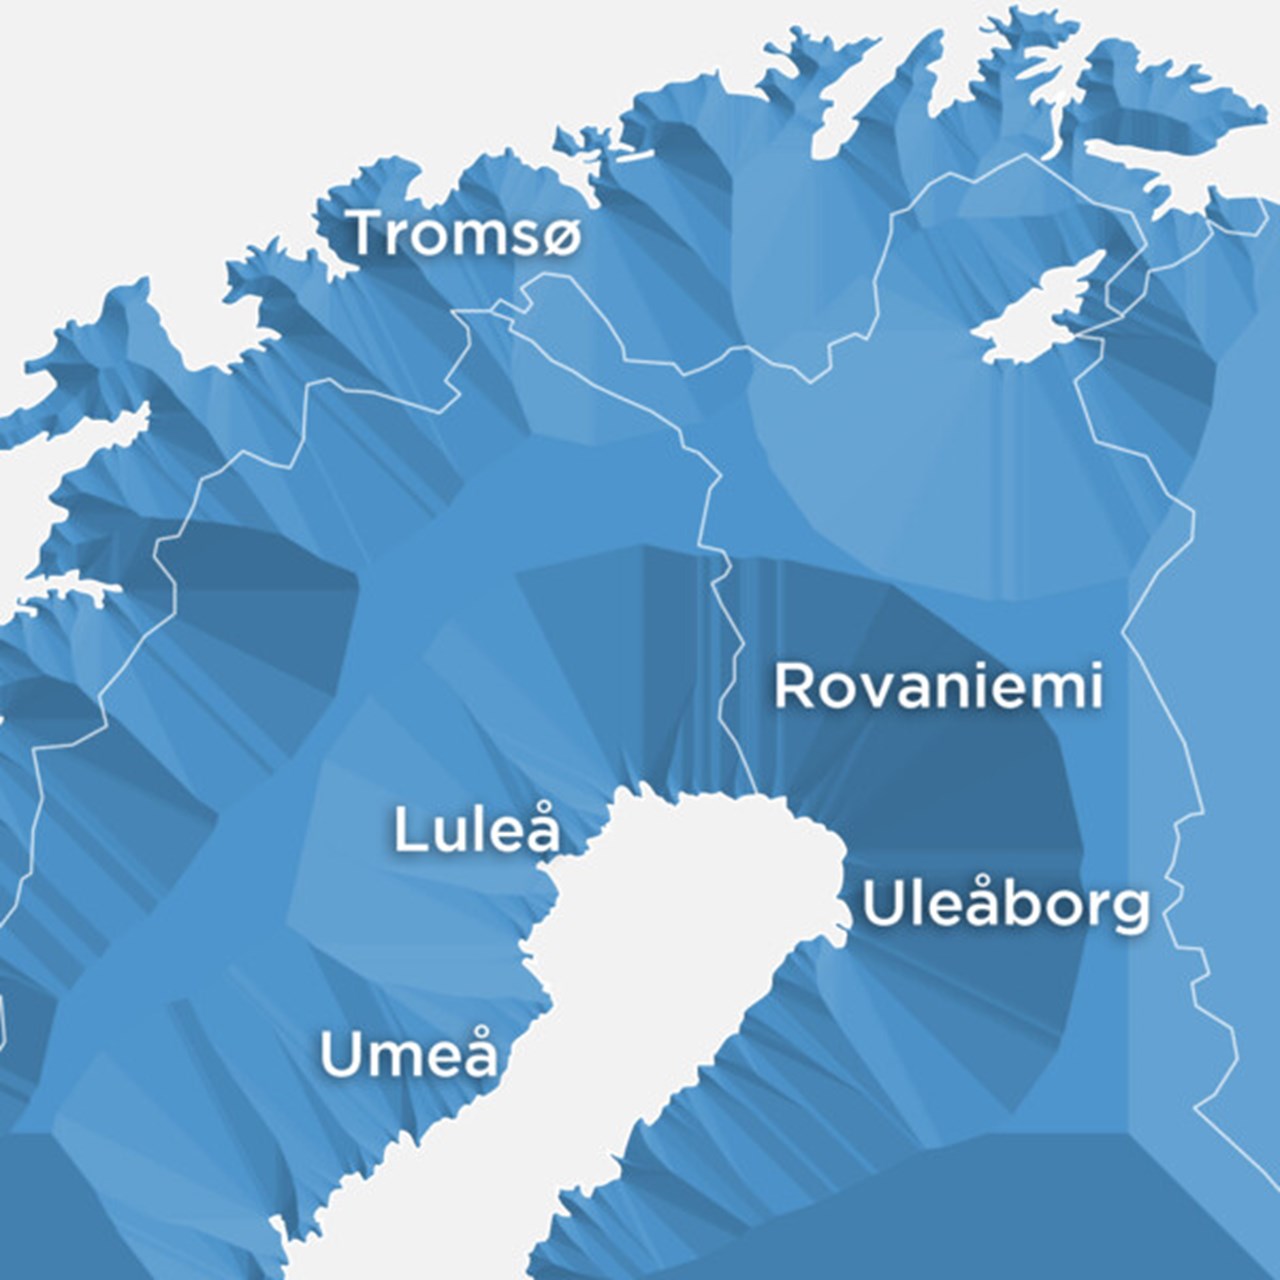 Karta över norra Sverige, Norge och Finland med städerna Umeå, Luleå, Tromsö, Rovaniemi och Uleåborg markerade